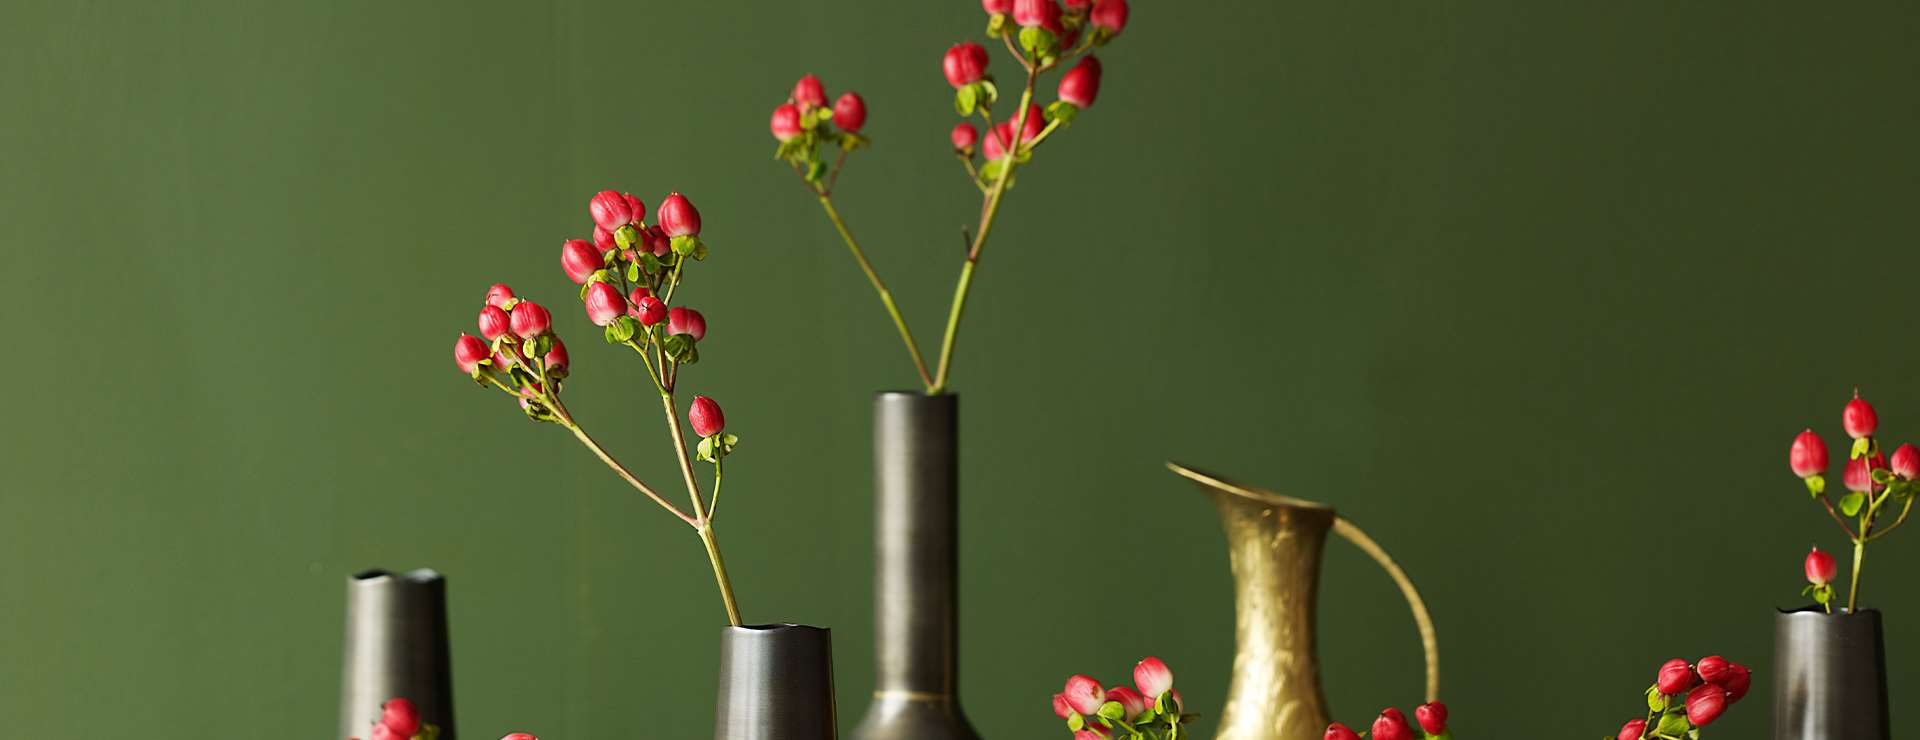 Vaser med røde blomster foran en vegg i årets farge 2012 - grønn